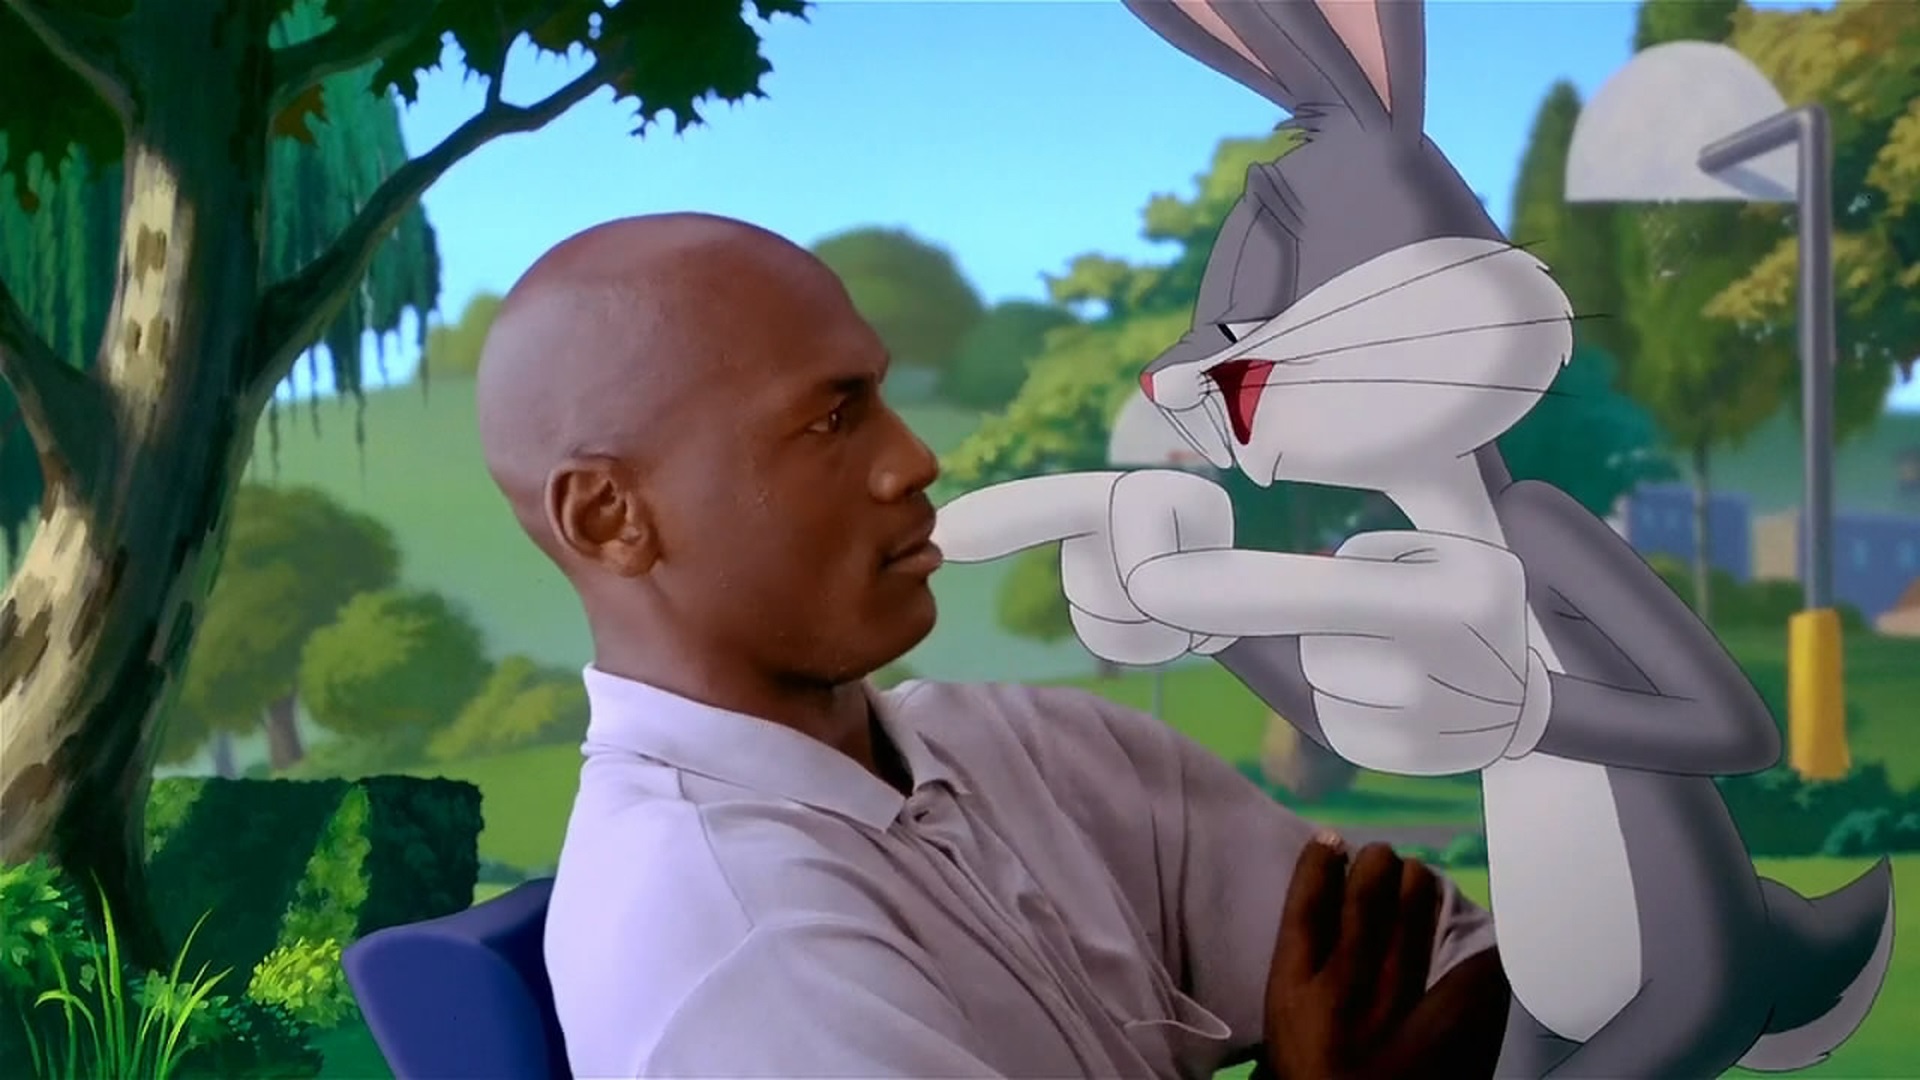 En 1996 Michael Jordan y Bugs Bunny protagonizaron "Space Jam". (Warner Bros.)